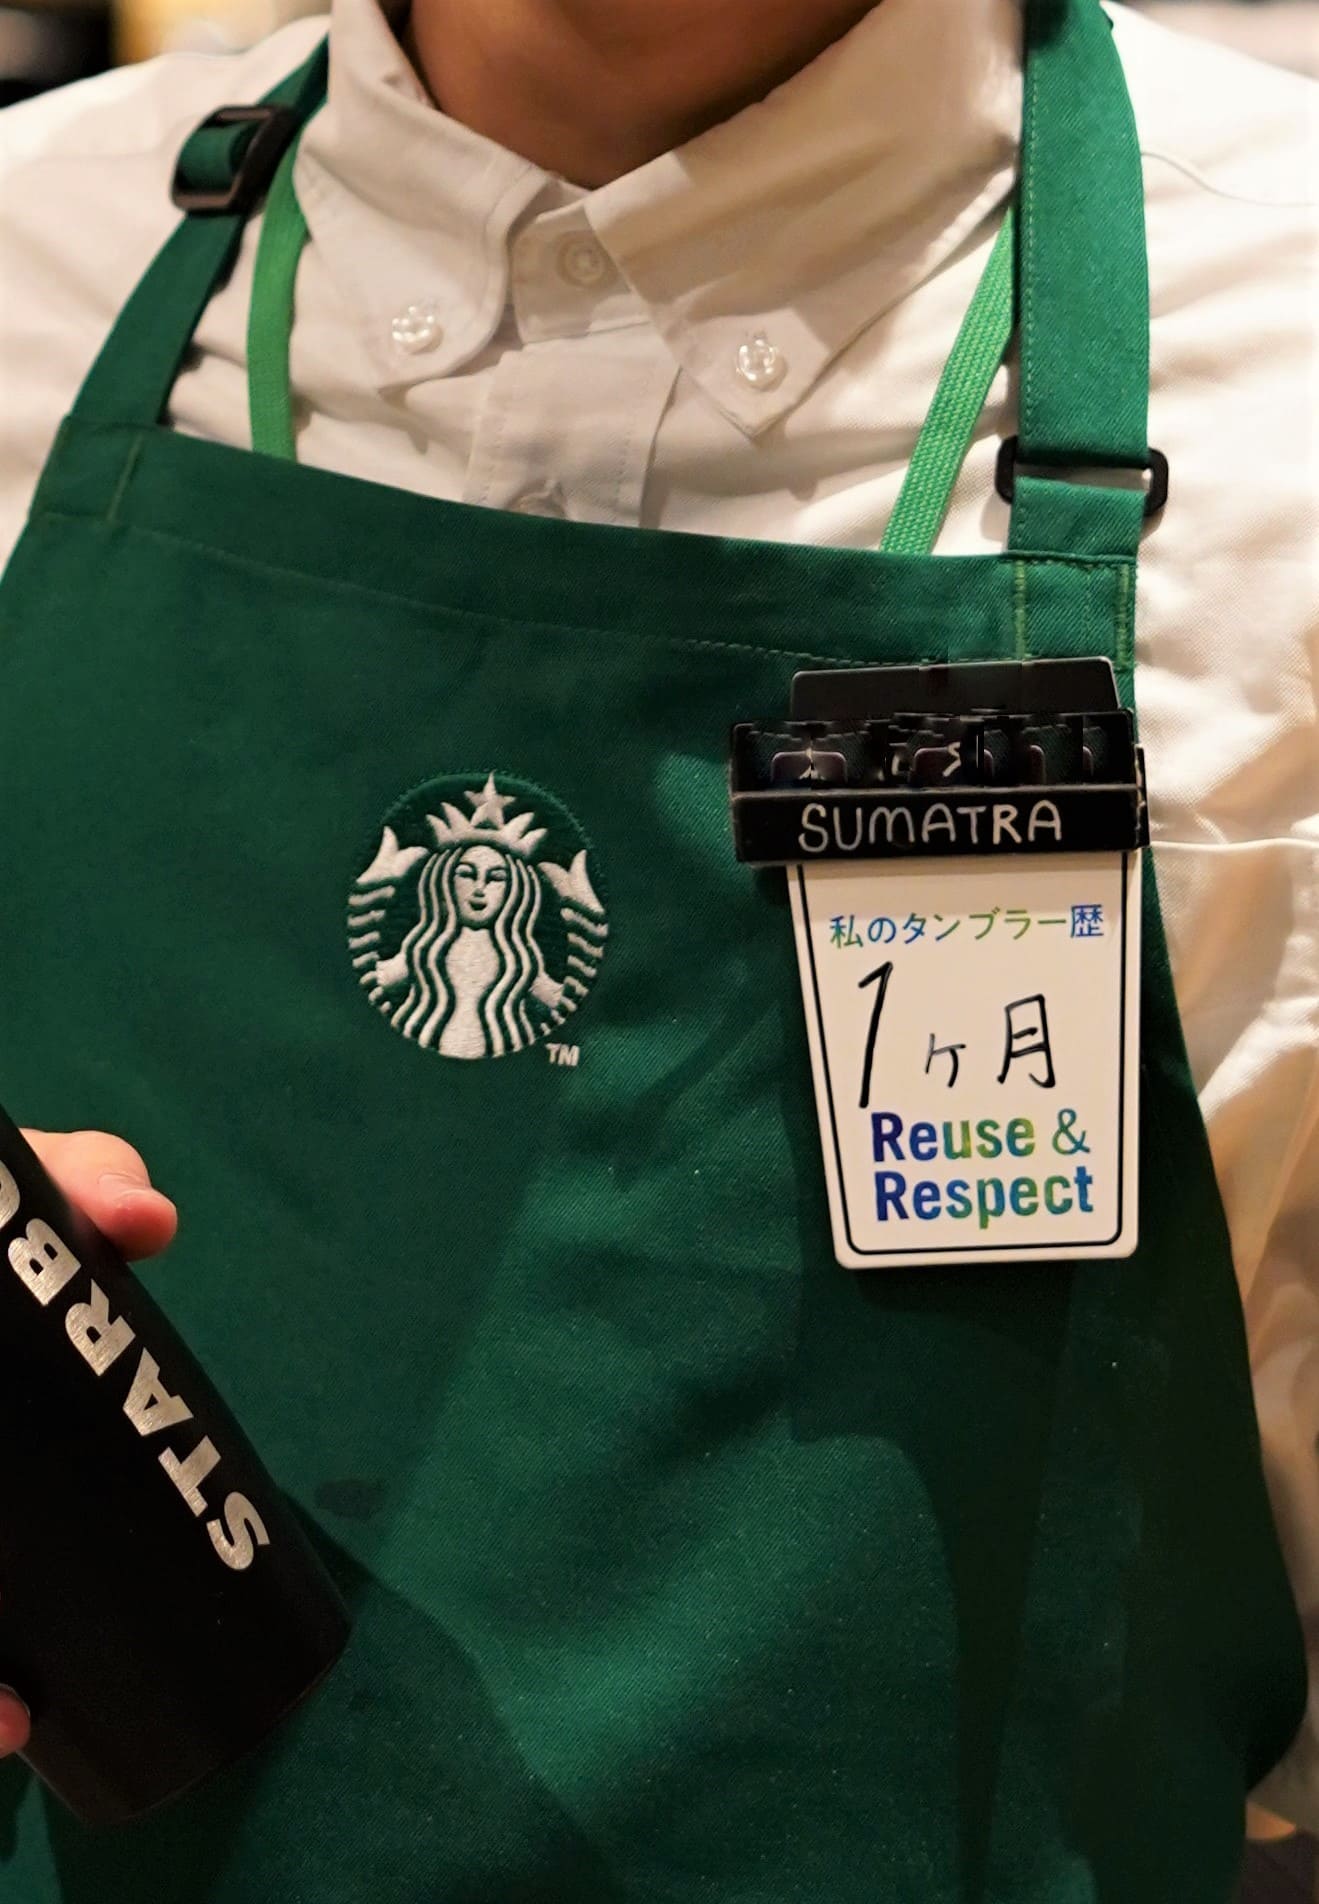 持続可能な未来のために今すぐできることスターバックスは「Reuse  Respect」サステナビリティプロジェクトの一環として、4月22日のアースデイから、使い捨てプラスチック削減キャンペーンをスタート  | スターバックス コーヒー ジャパン